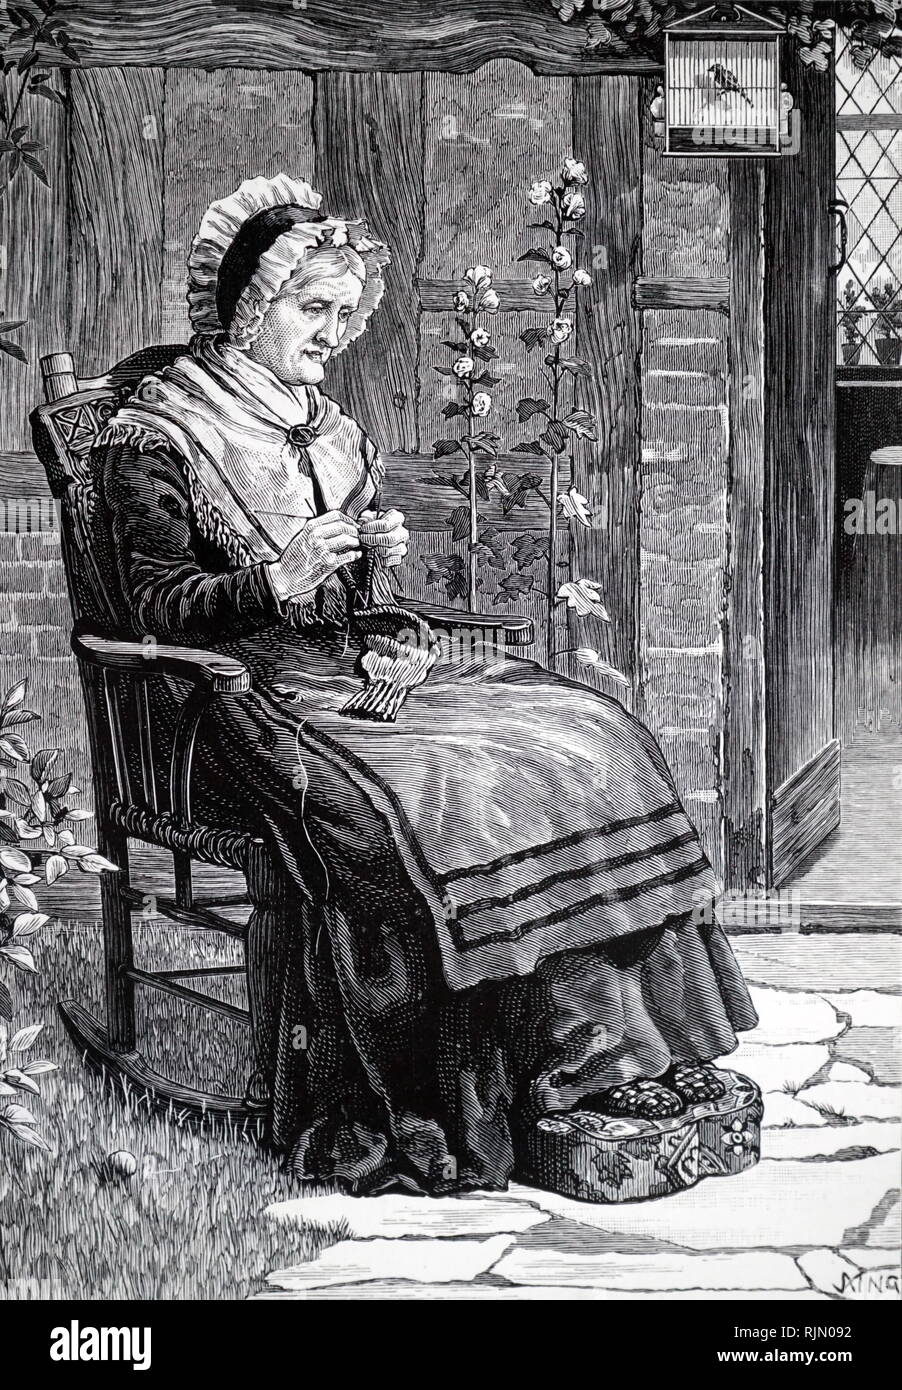 Illustration montrant le tricot sur quatre aiguilles. Londres, 1883. La vieille dame porte un bonnet et a ses pieds sur un tabouret, tandis que son oiseau de compagnie est suspendu par la porte. Banque D'Images